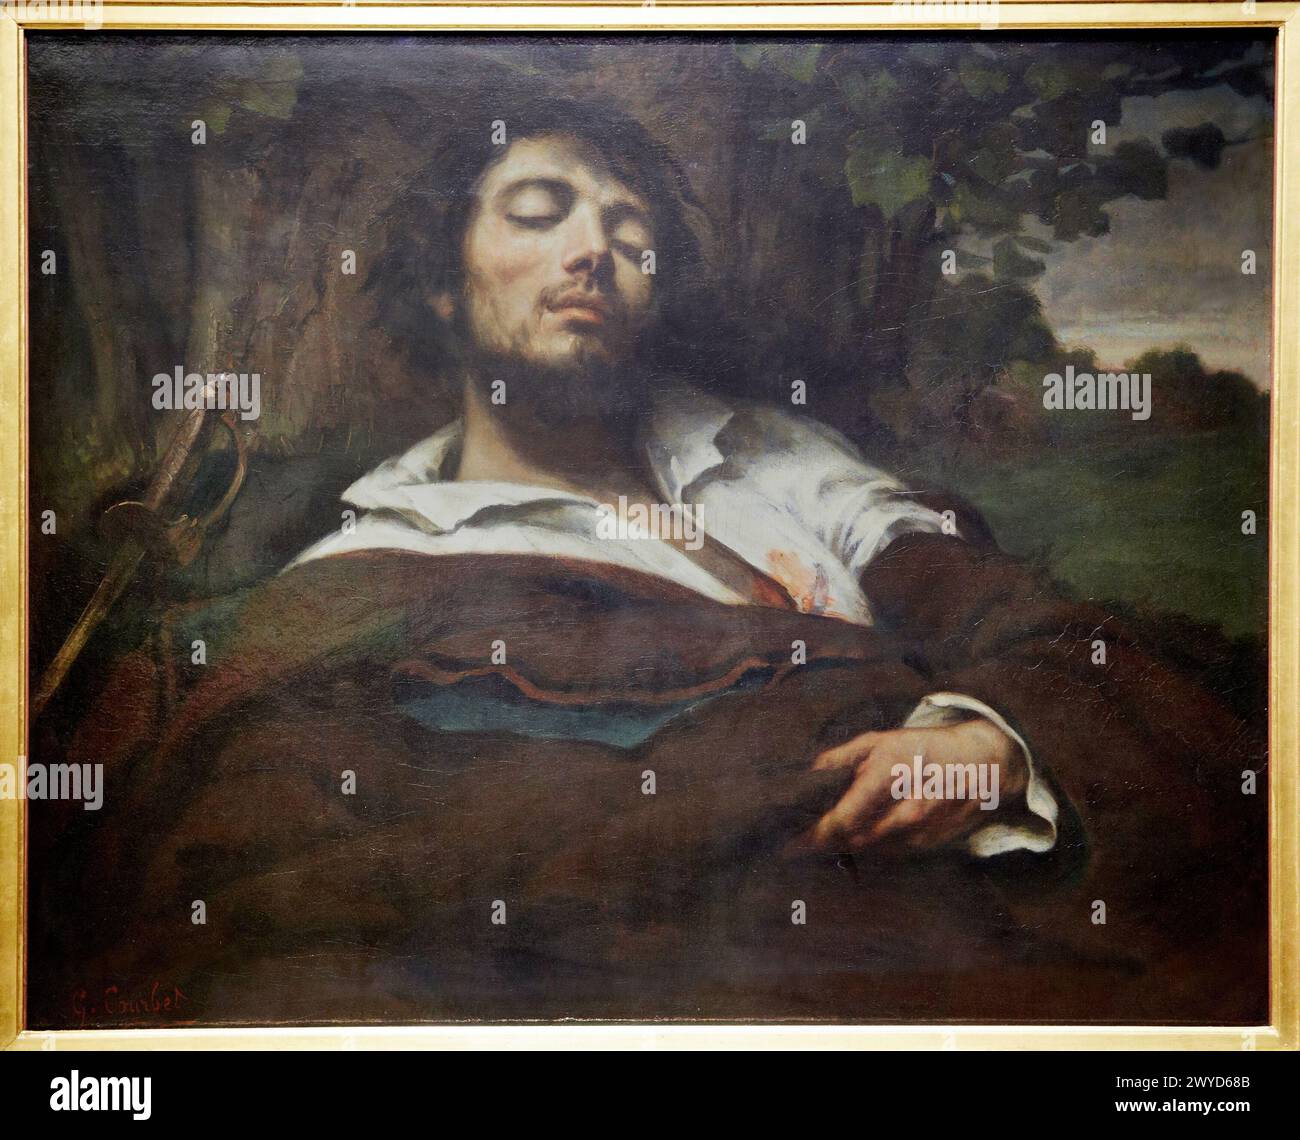 'L'homme blessé'. Gustave Courbet. Musée d'Orsay. Orsay Museum. Paris. France. Stock Photo